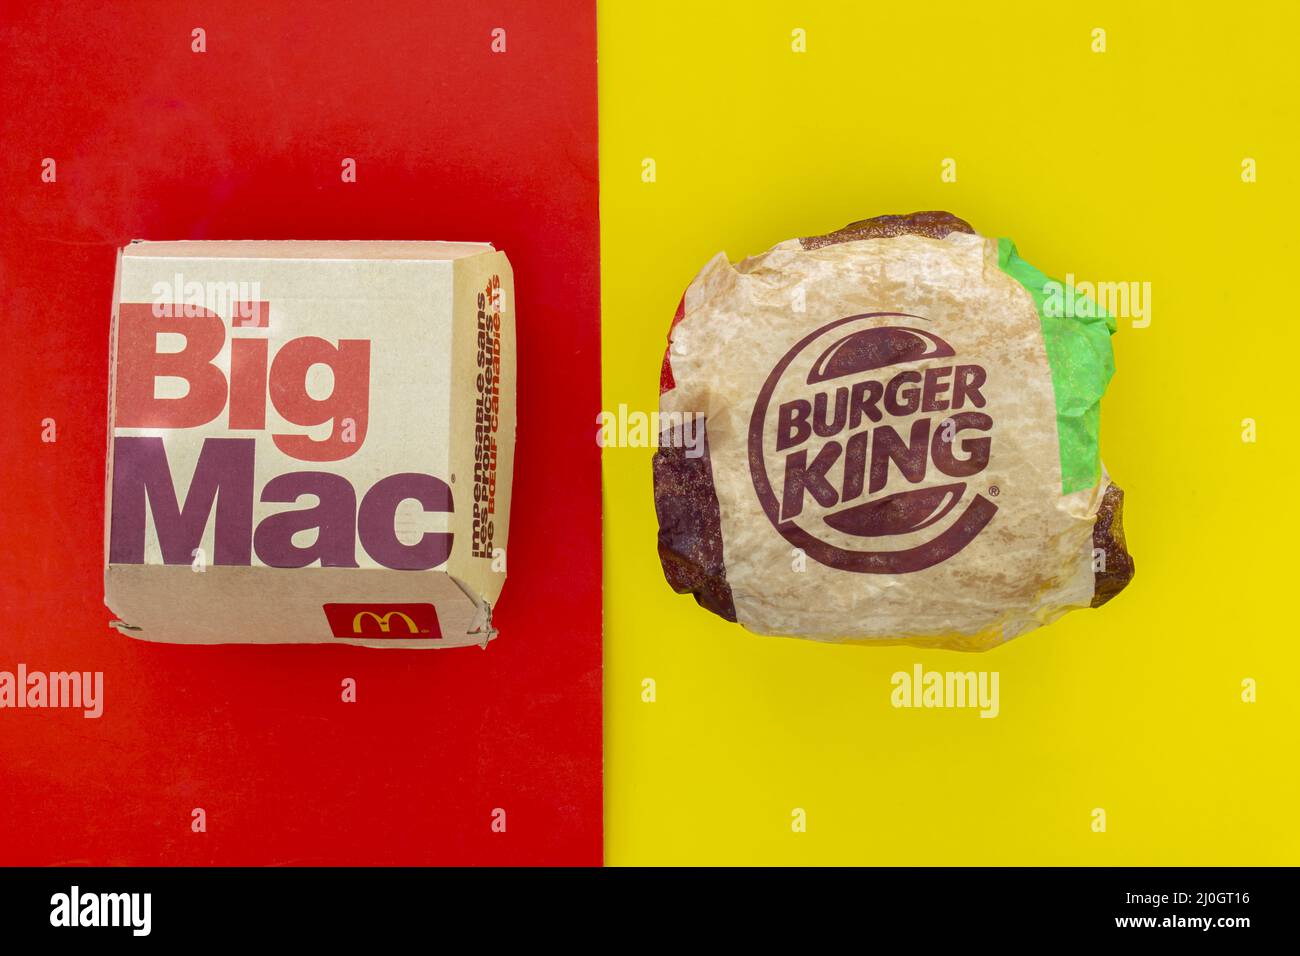 Calgary, Alberta. Canada. May 17, 2021. A Mcdonald's Big Mac and Burger King Whopper hamburgers. Concept: Top Hamburger Companie Stock Photo